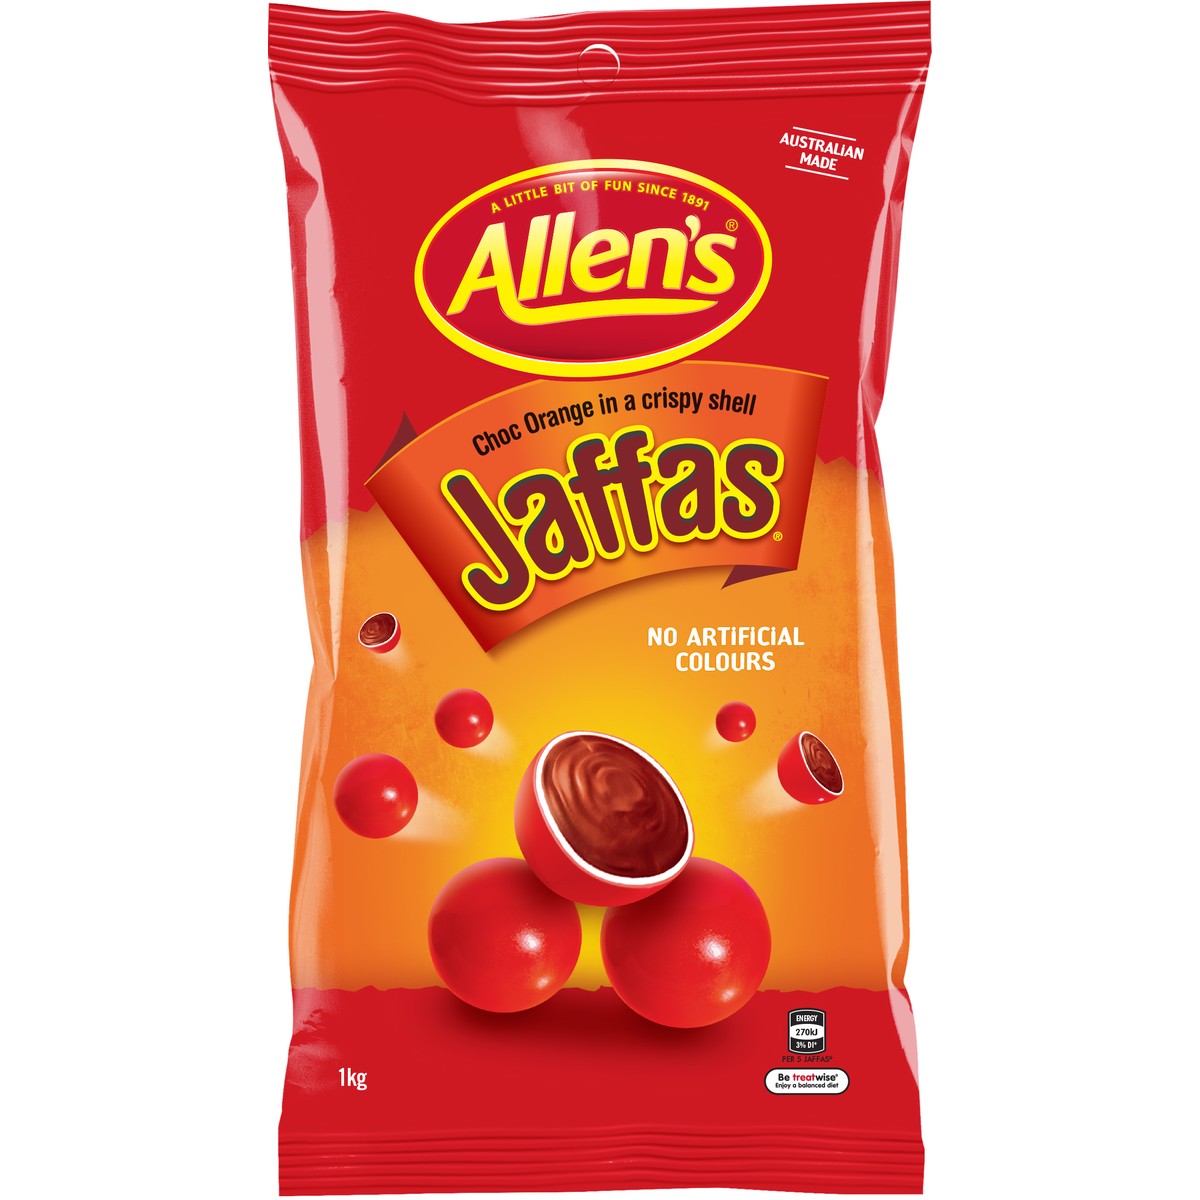 Allen's Jaffas